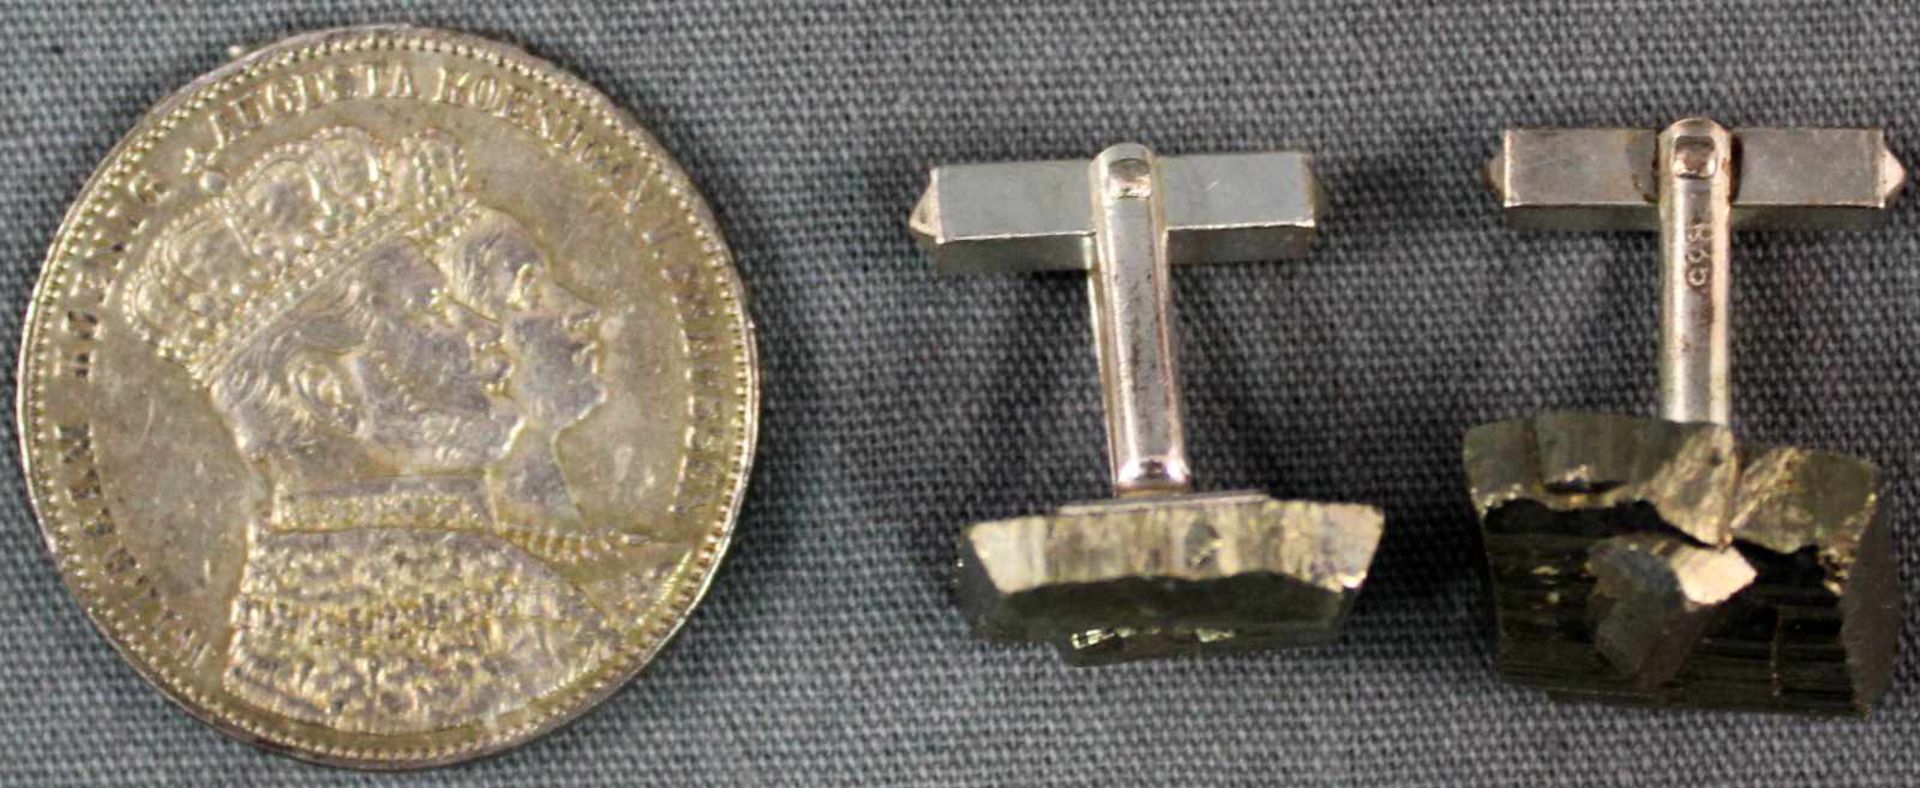 Preußischer Krönungstaler, 1861 Wilhelm I., und ein Paar Manschettenknöpfe 835 Silber. 36,7 Gramm.